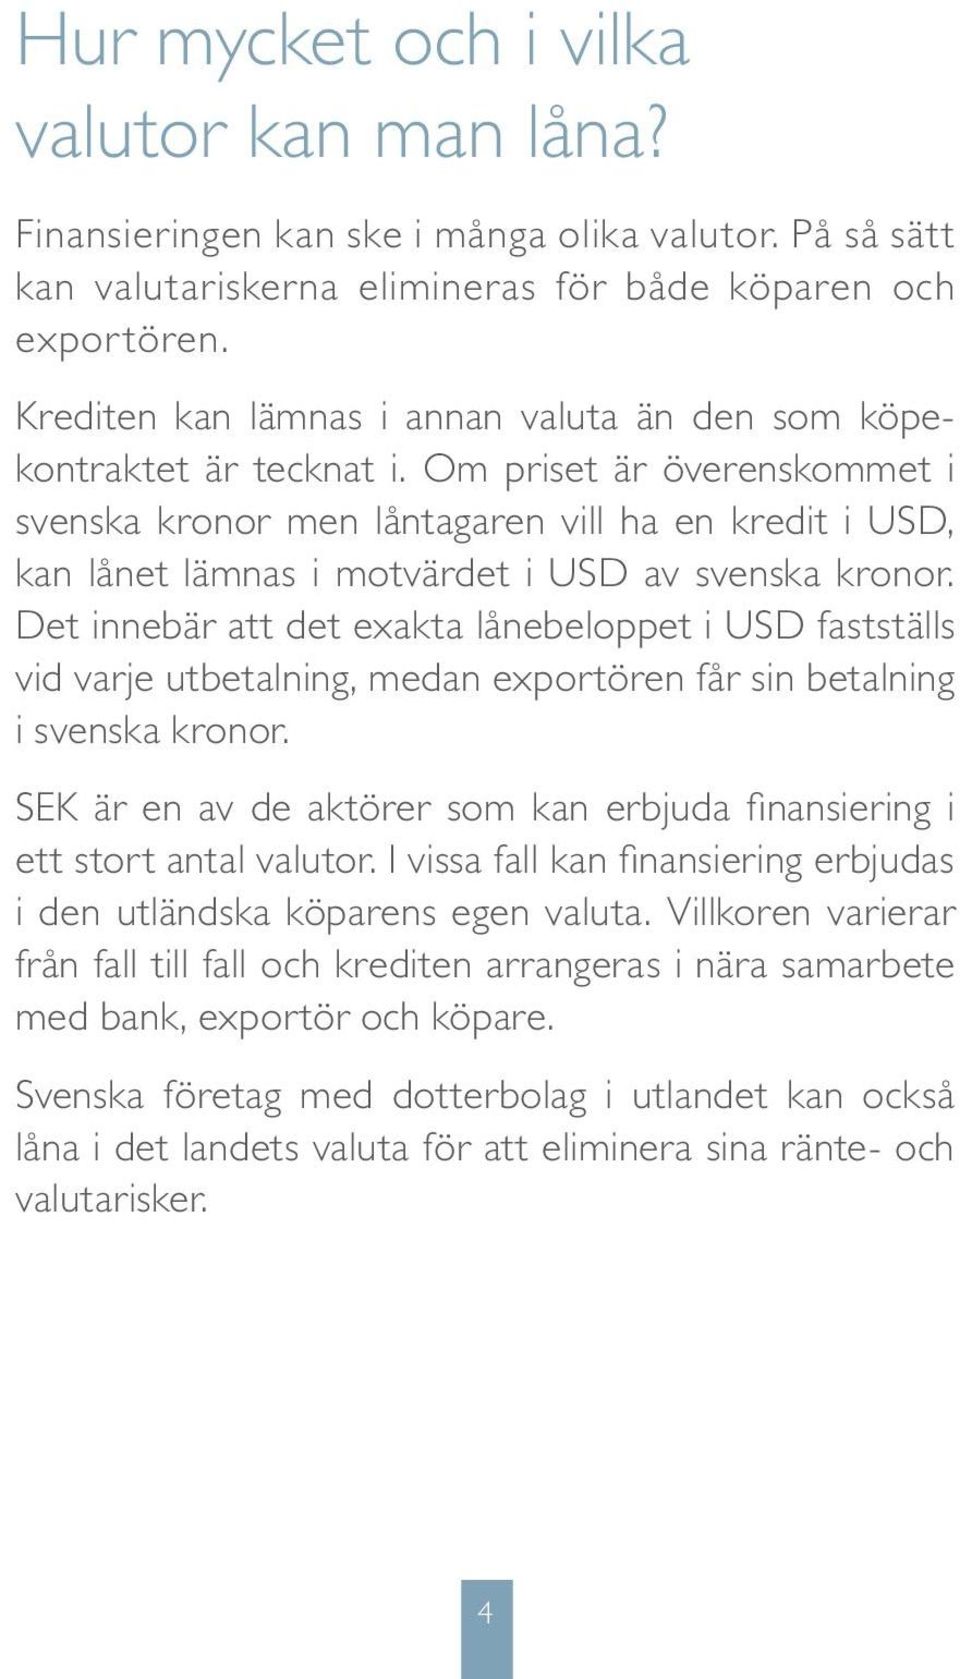 Om priset är överenskommet i svenska kronor men låntagaren vill ha en kredit i USD, kan lånet lämnas i motvärdet i USD av svenska kronor.